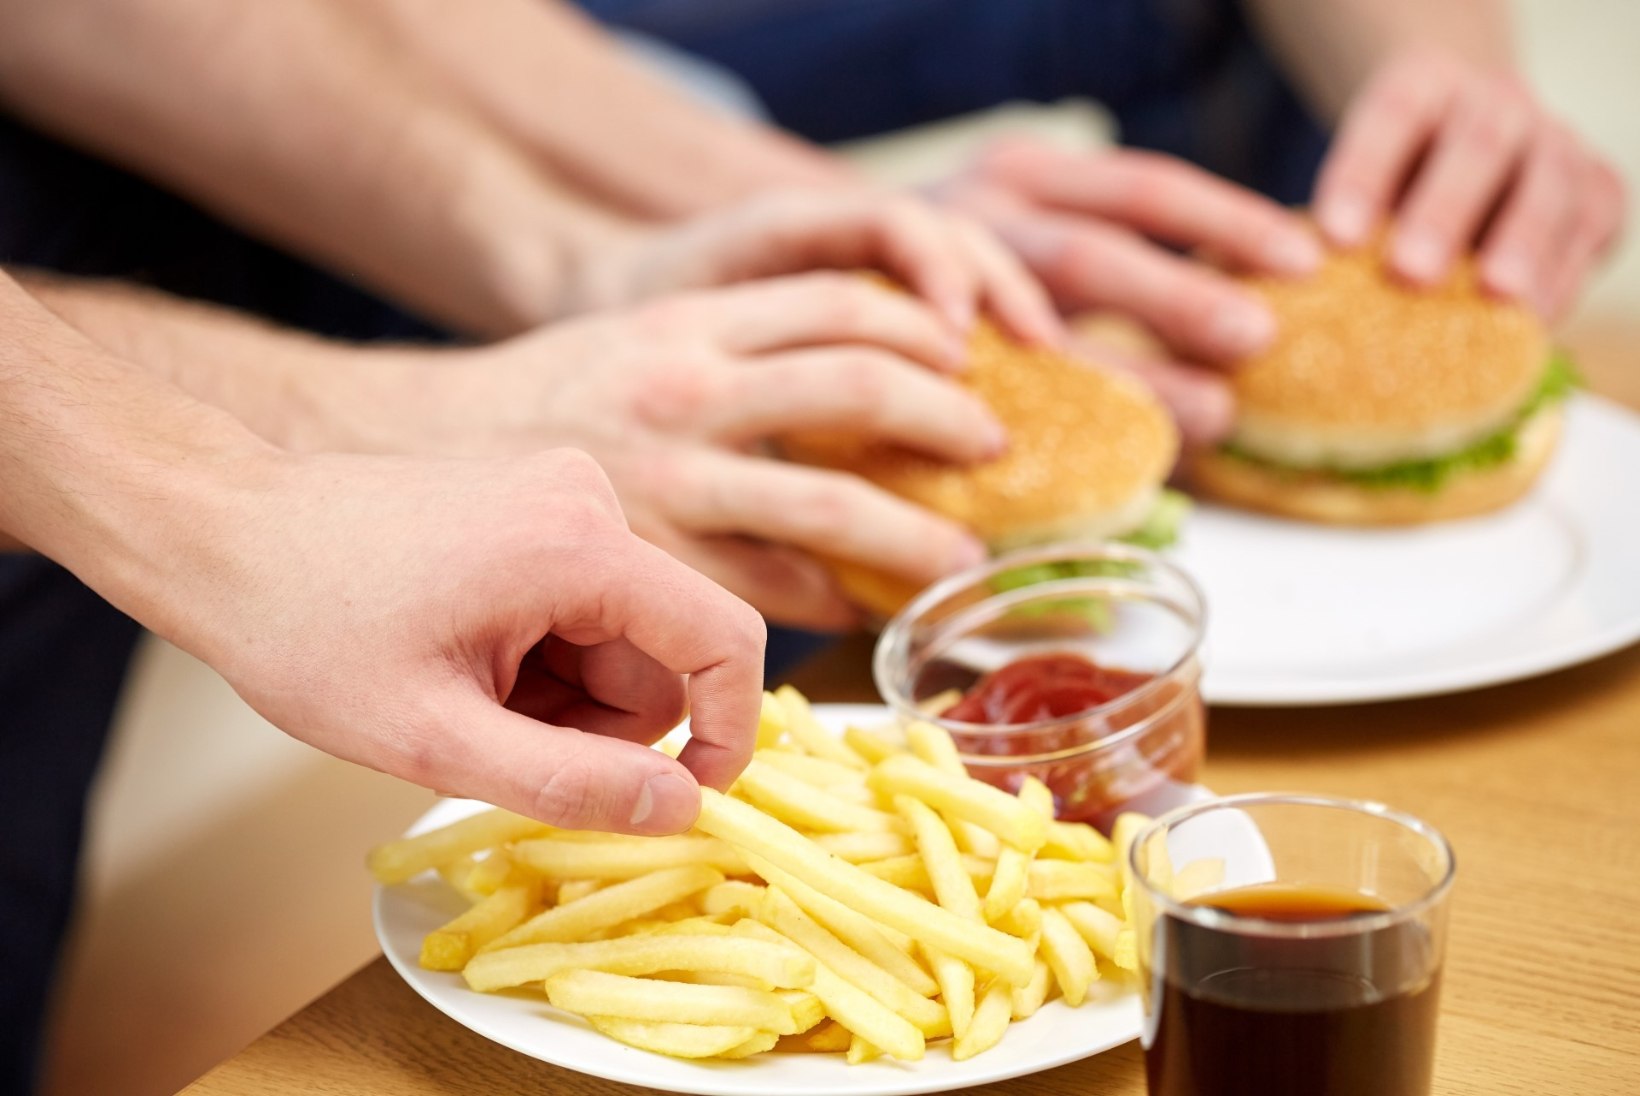 Miks me ei suuda ebatervislike toitude söömisest loobuda?